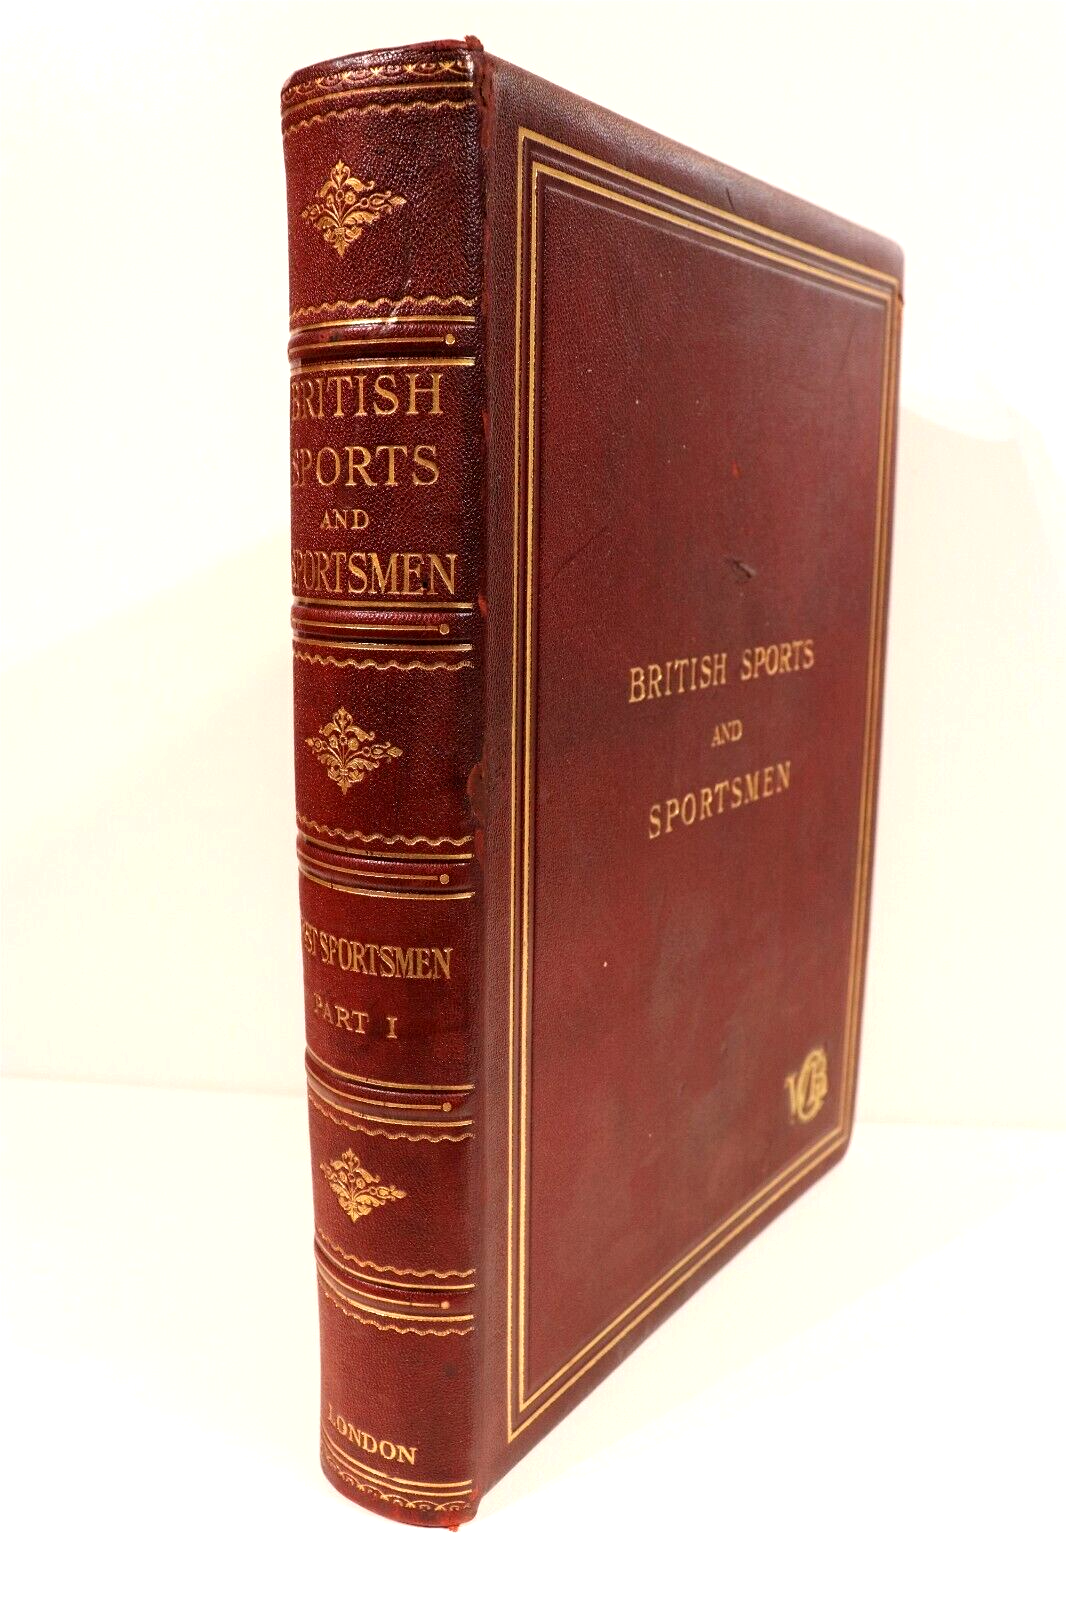 British Sports & Sportsmen - Sportsmen Of Past - c1920 - 1st Ed. Antique Book